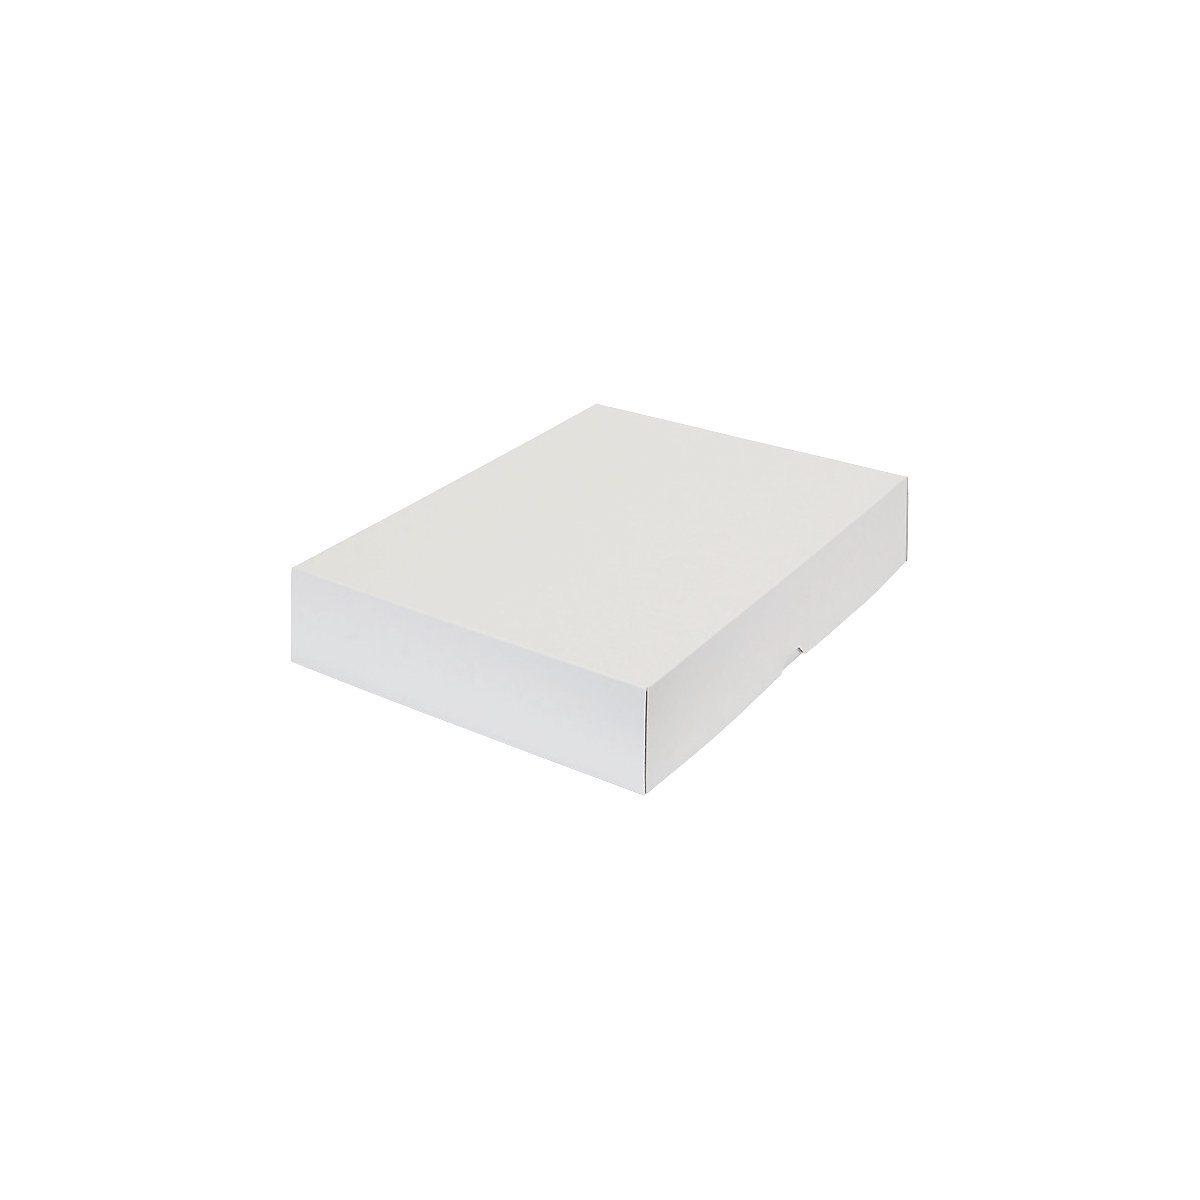 Stülpdeckelkarton, zweiteilig, Innenmaße 435 x 315 x 80 mm, A3, weiß, ab 60 Stk-9